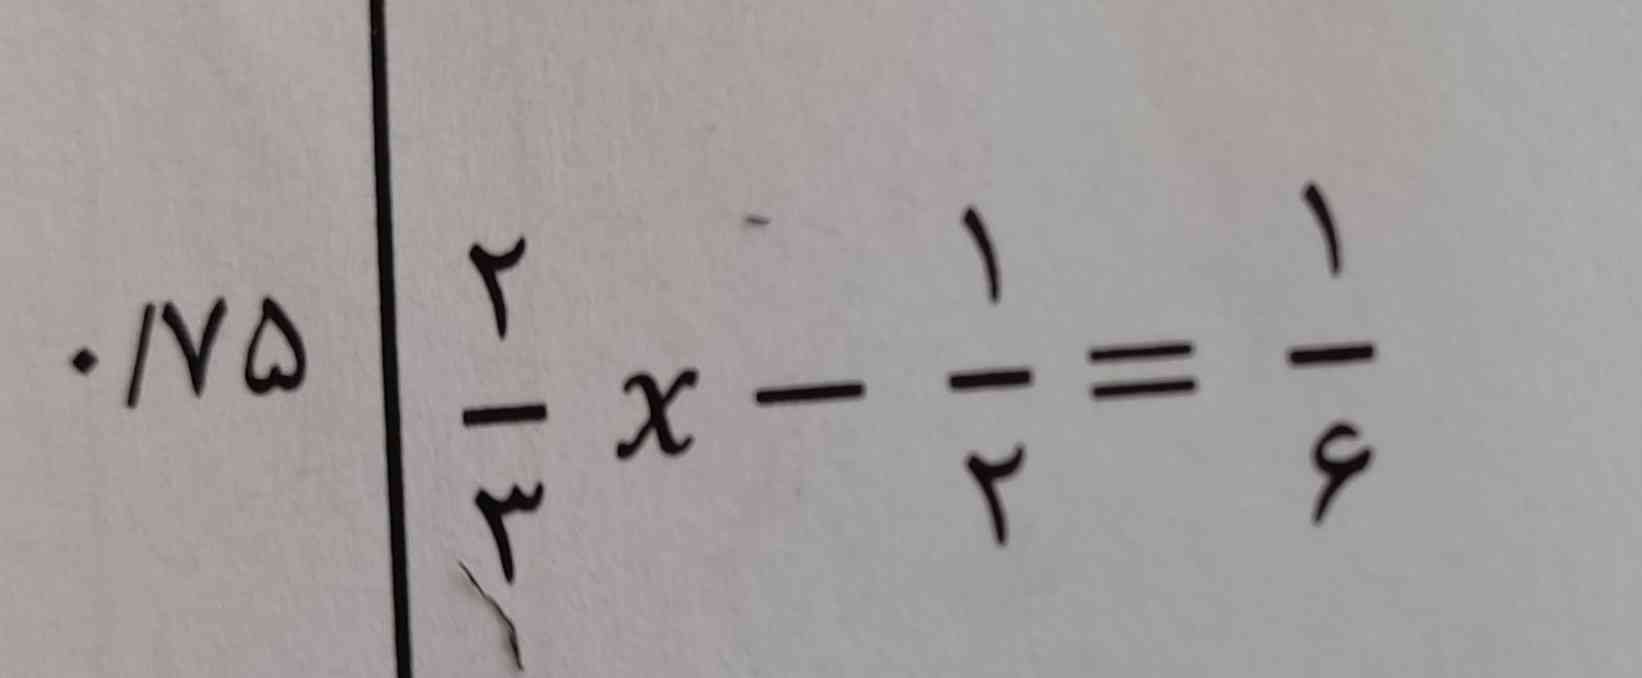 معادله را با راه حل انجام بدید تاج میدهم 